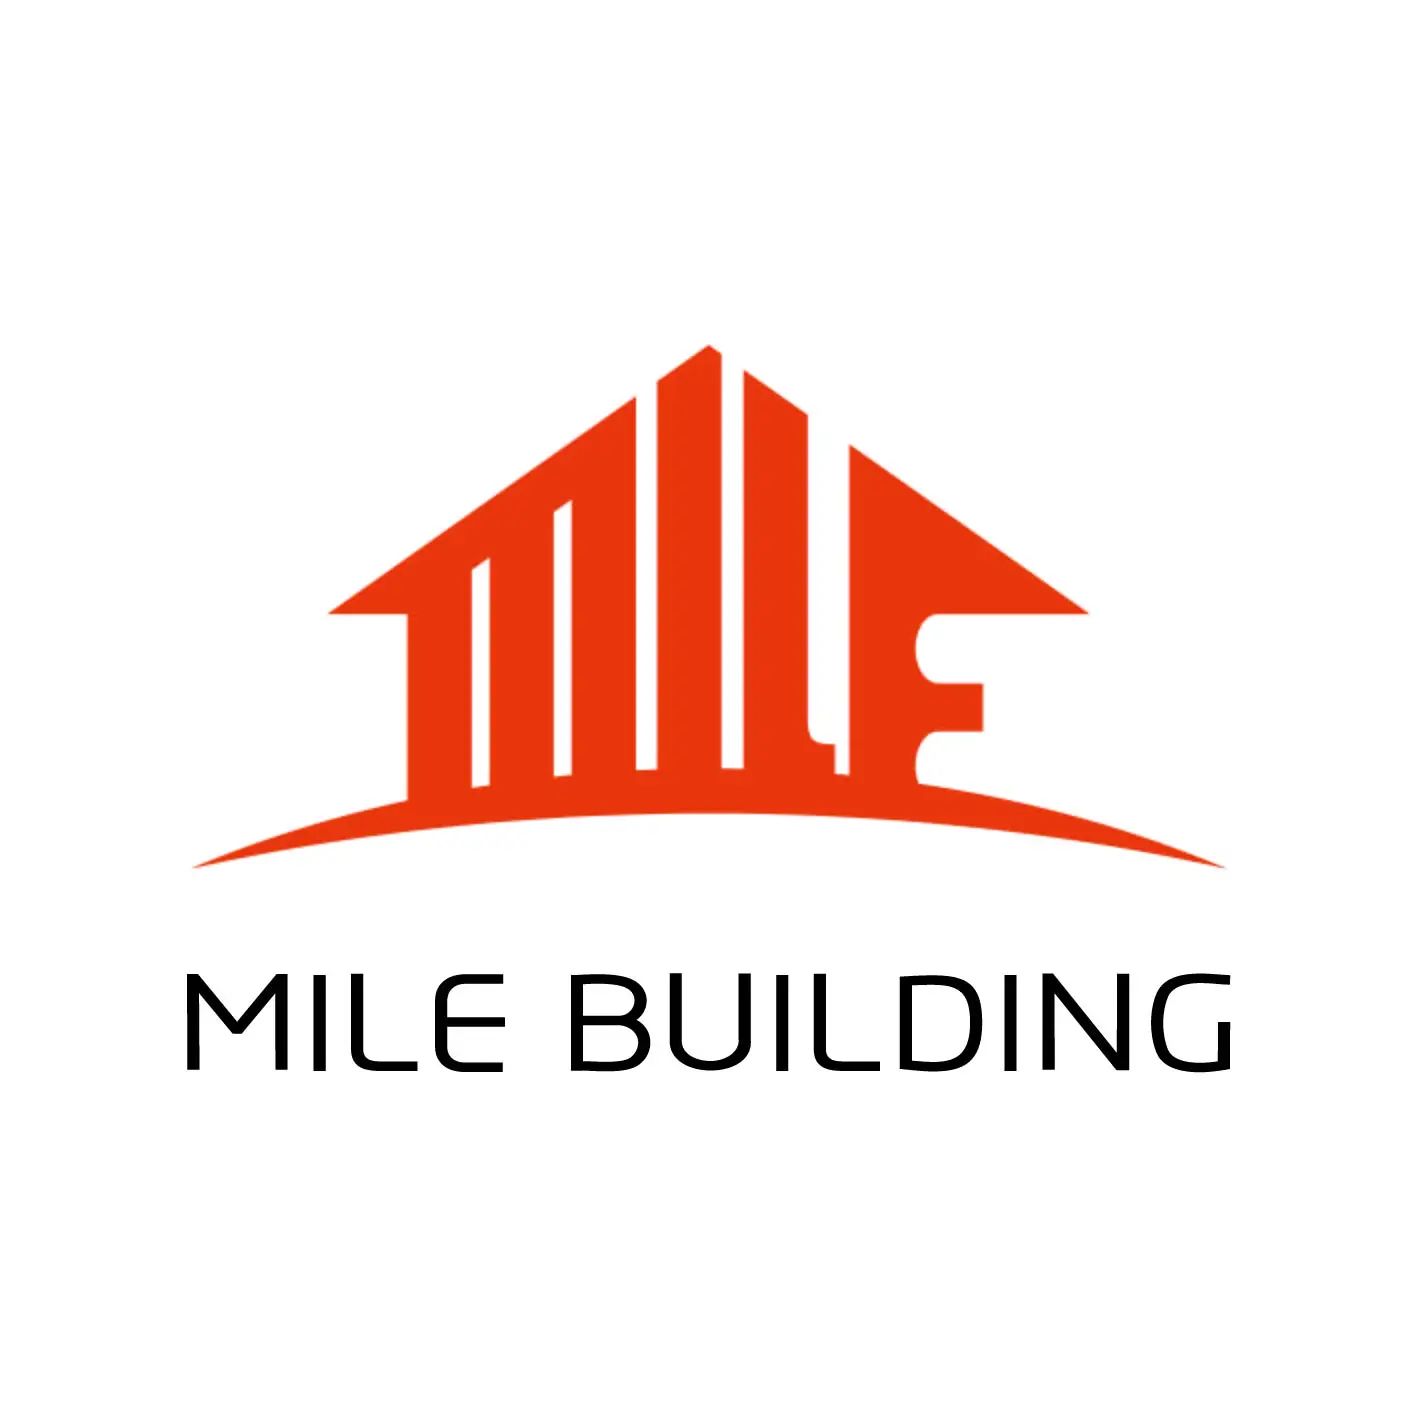 Build mile